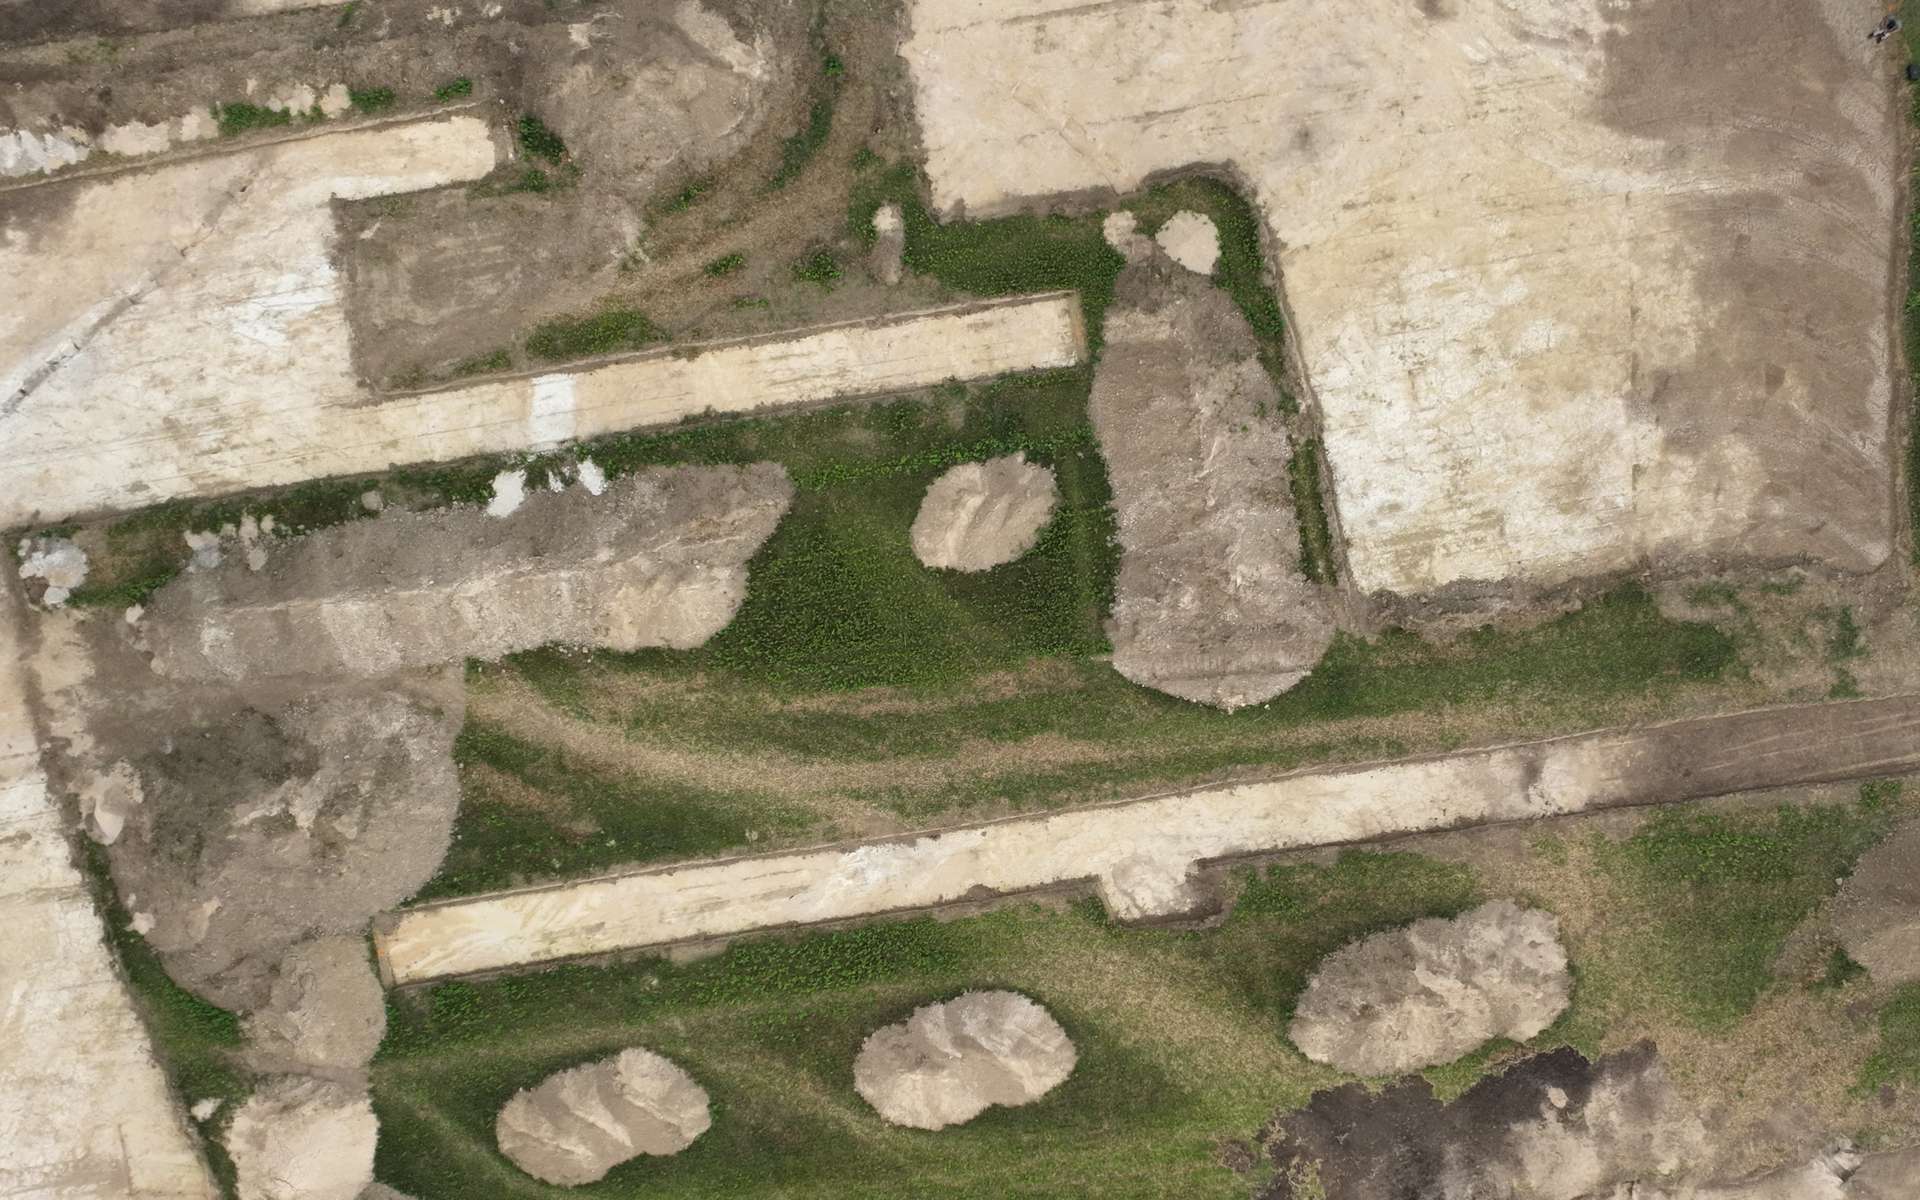 Découverte d'un site vieux de 3 000 ans dans la Marne, une clé pour comprendre la société du Néolithique